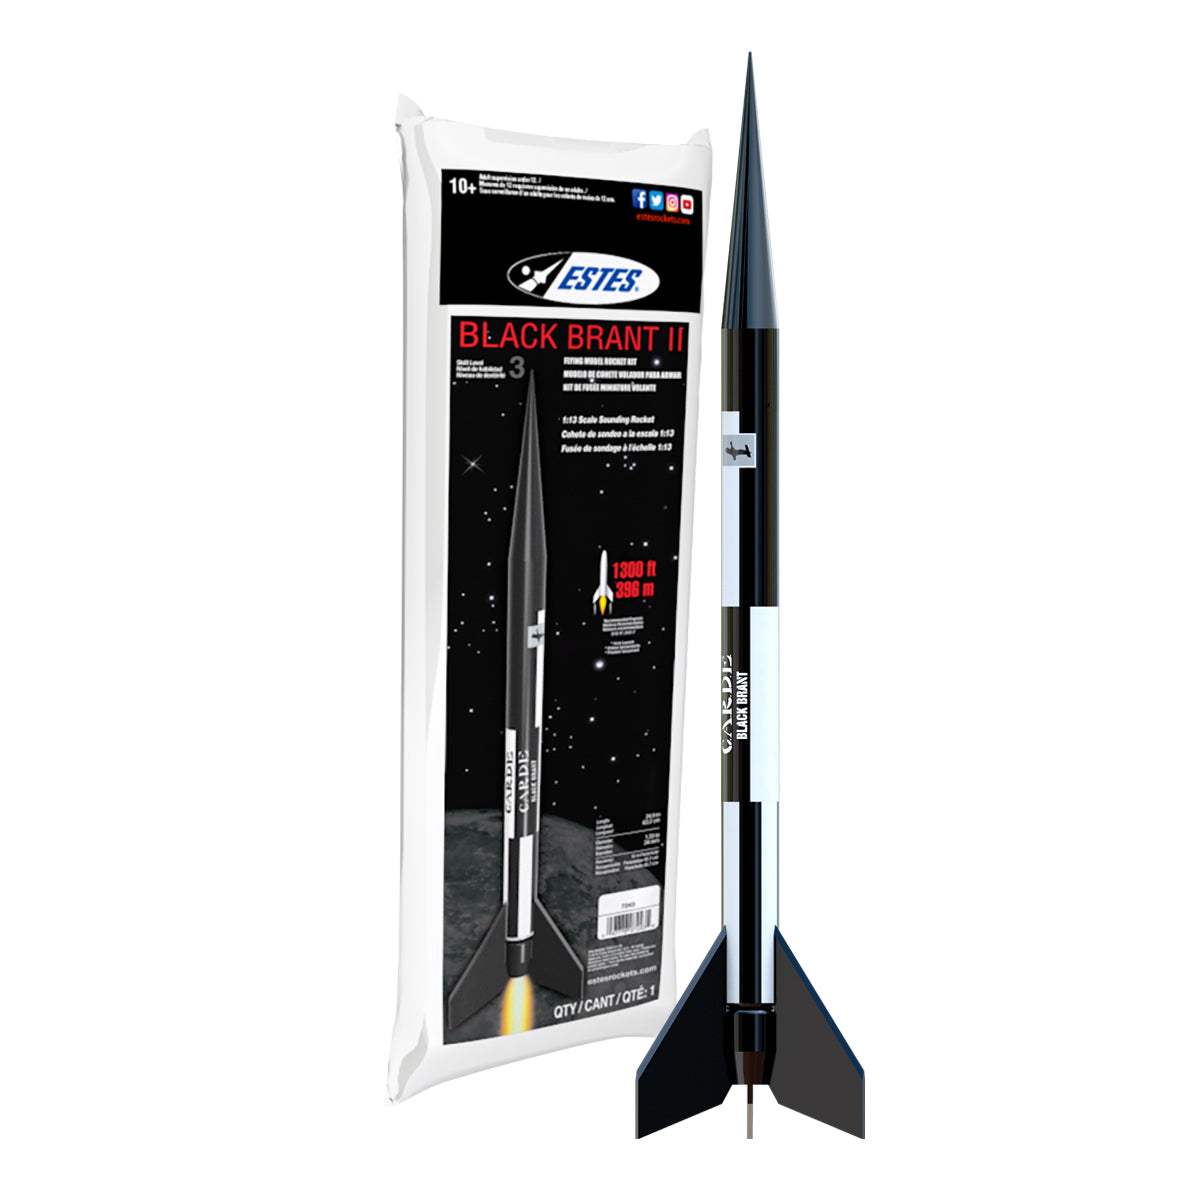 Black Acrylic Paint - Estes Rockets